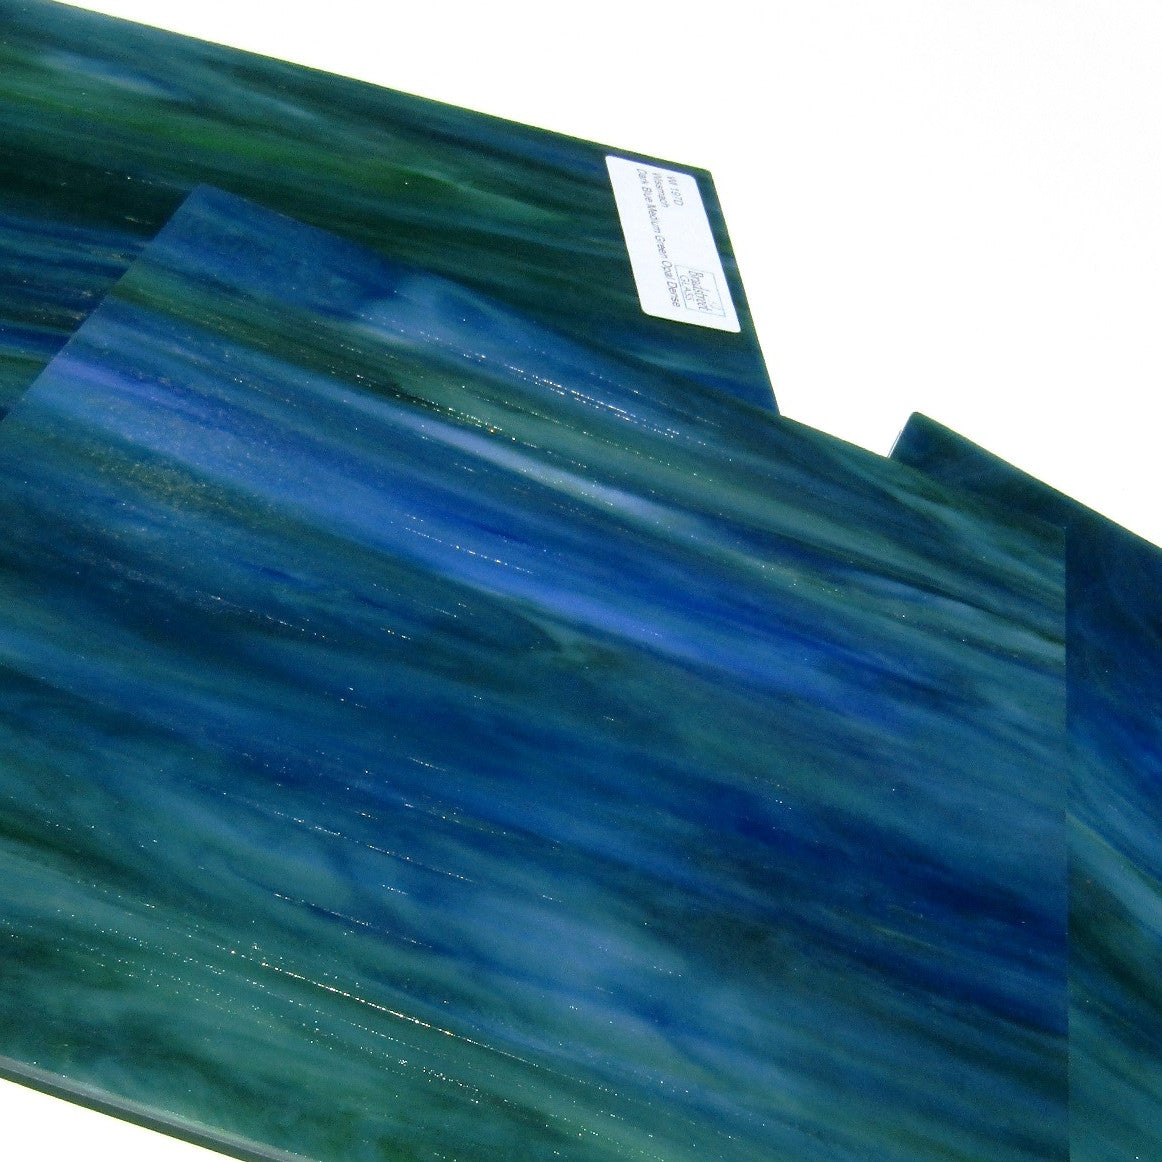 Wissmach 197D Stained Glass Sheet Dark Blue Medium Green Opal Dense 